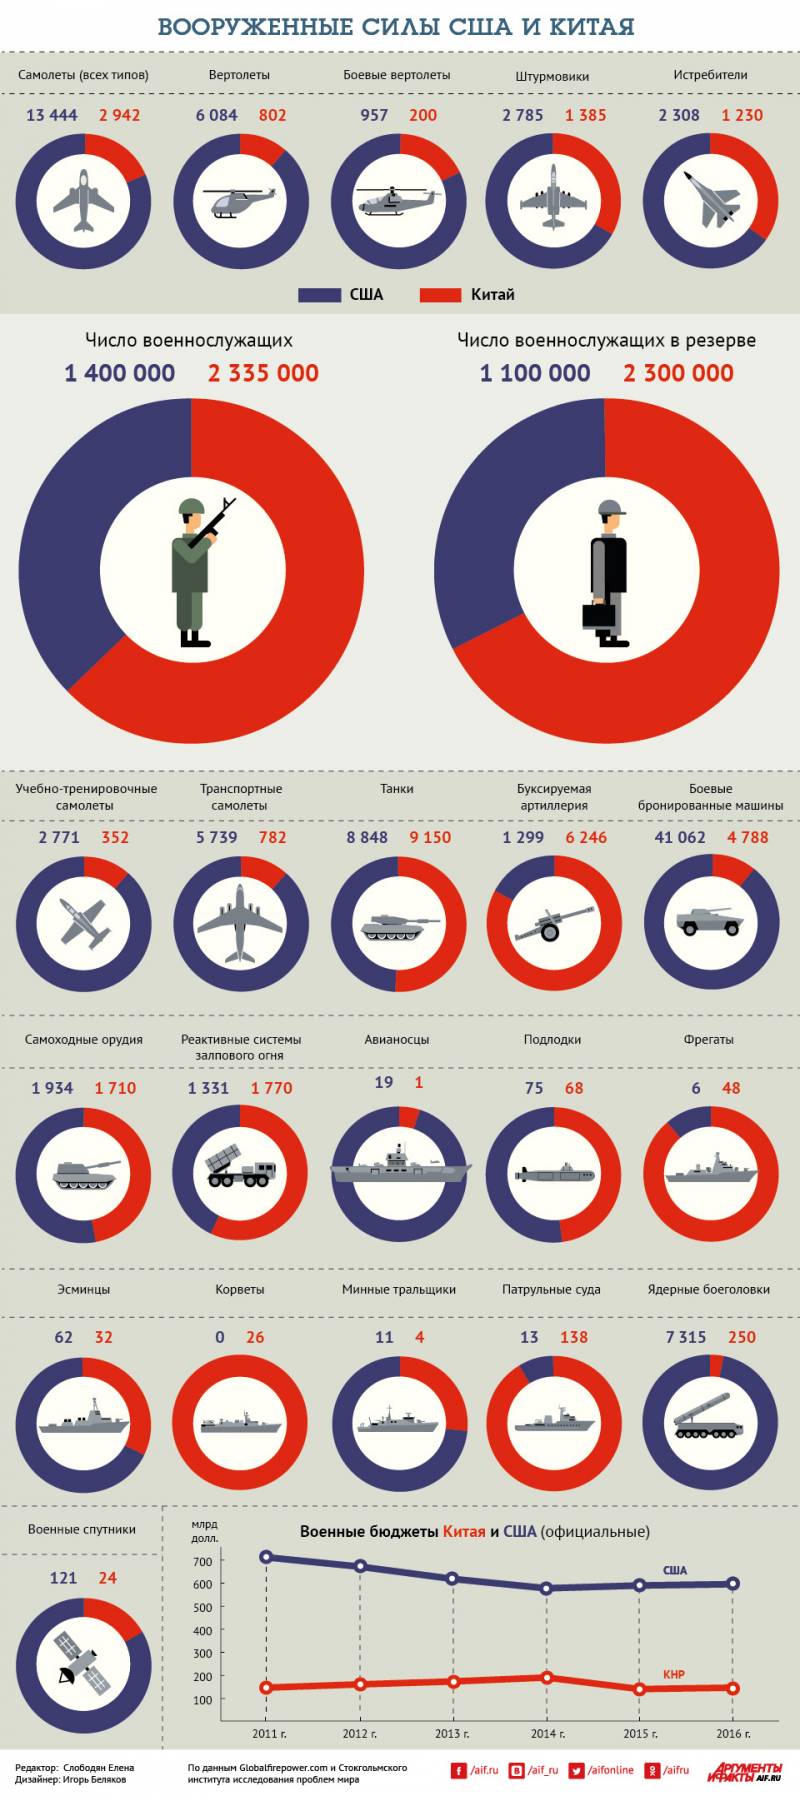 Сравнение вооруженных сил Китая и США. Инфографика